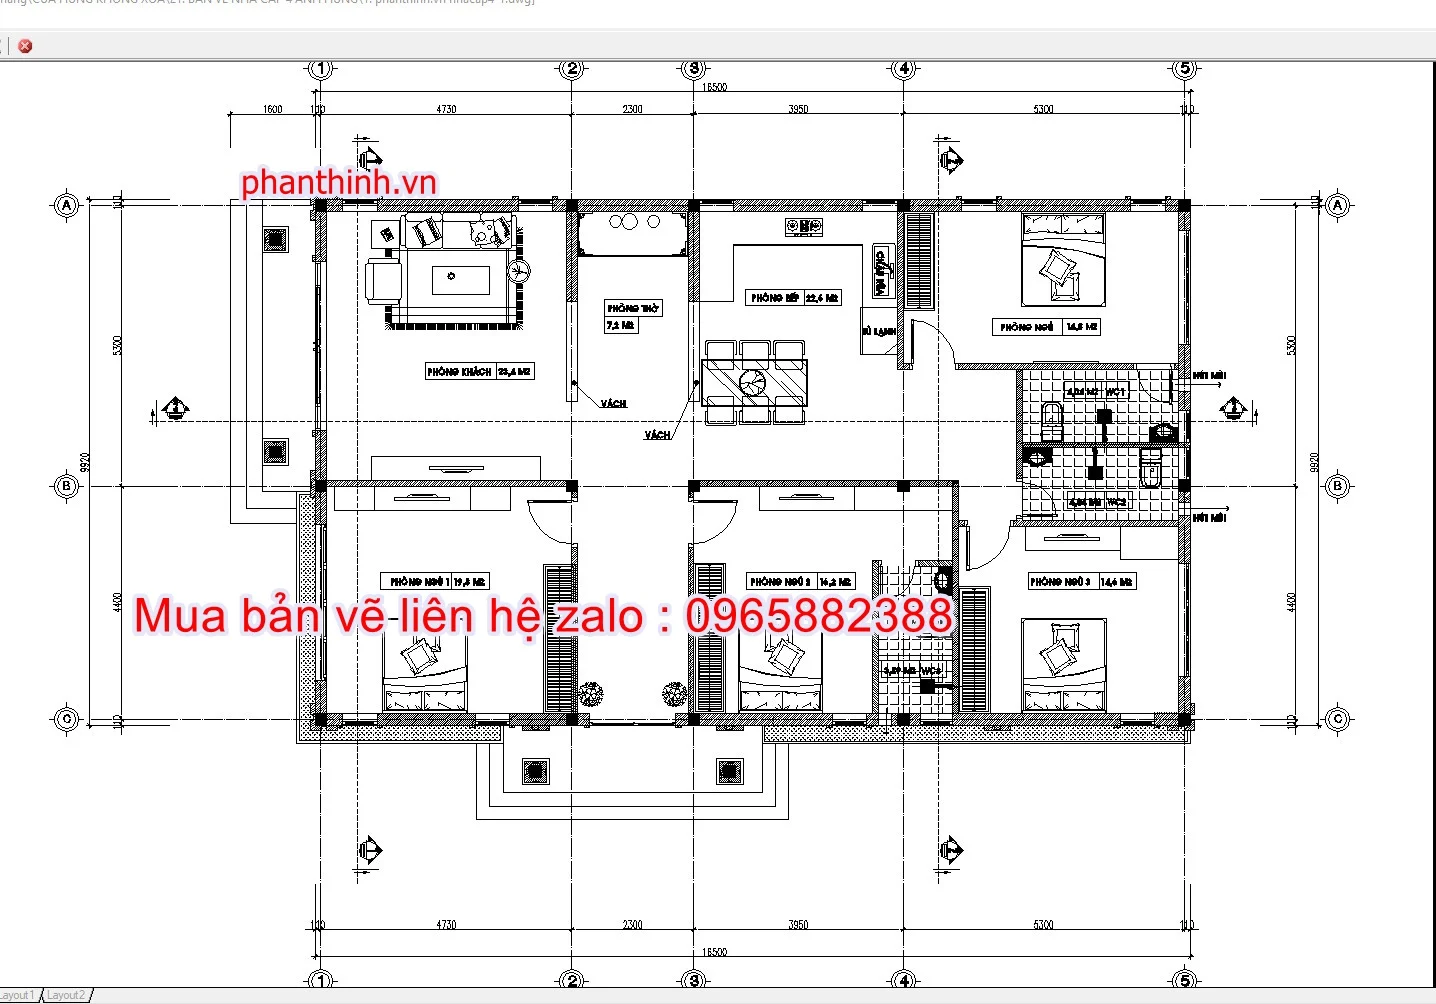 Thiết kế nhà cấp 4 mái bằng 10x12m 3 phòng ngủ tại Đồng Tháp NC4105 |  VTKONG | Ngoại thất nhà, Kiến trúc nhà cửa, Home fashion